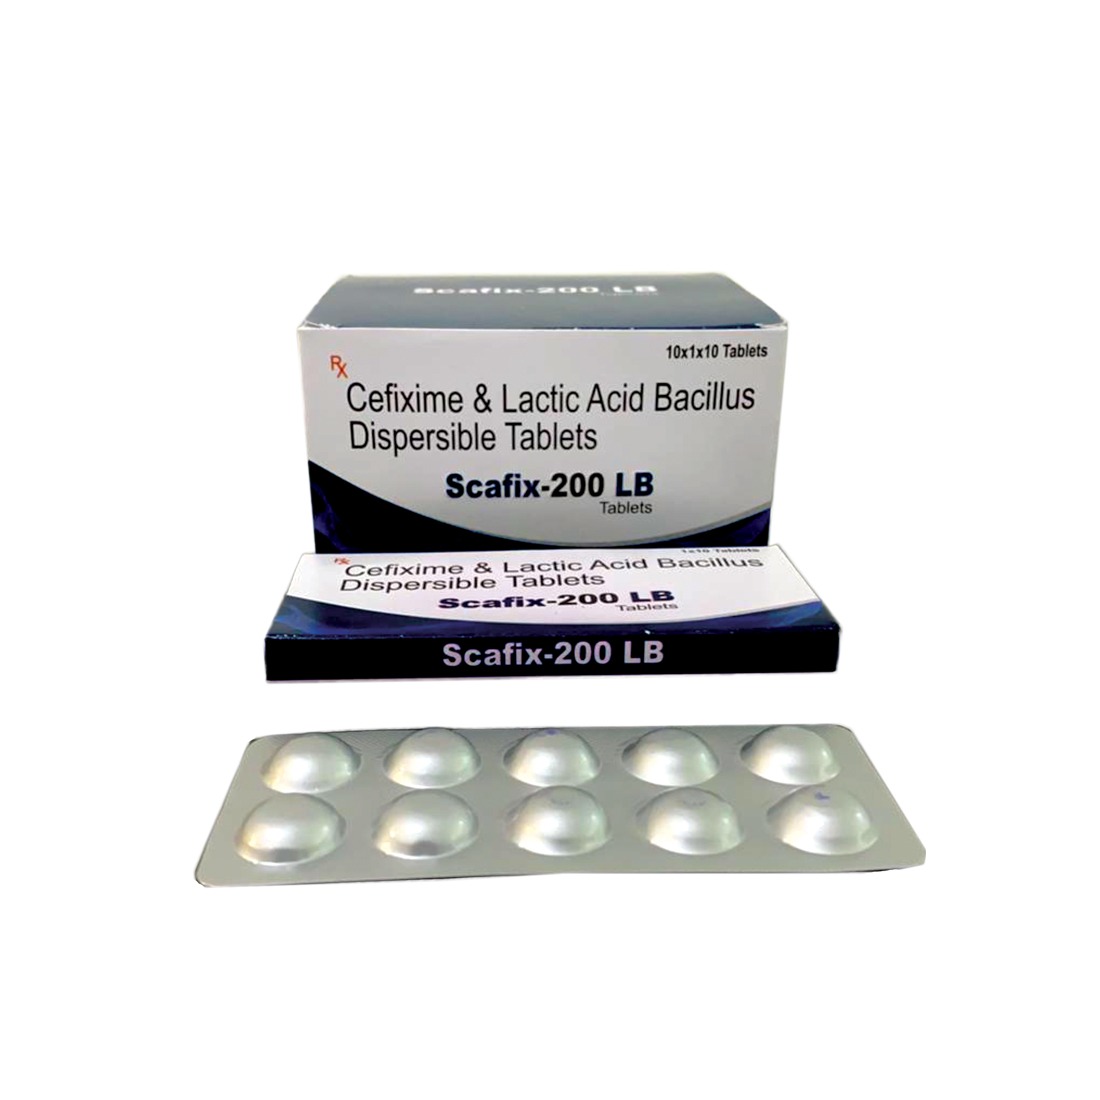 SCAFIX-200 LB Tablets